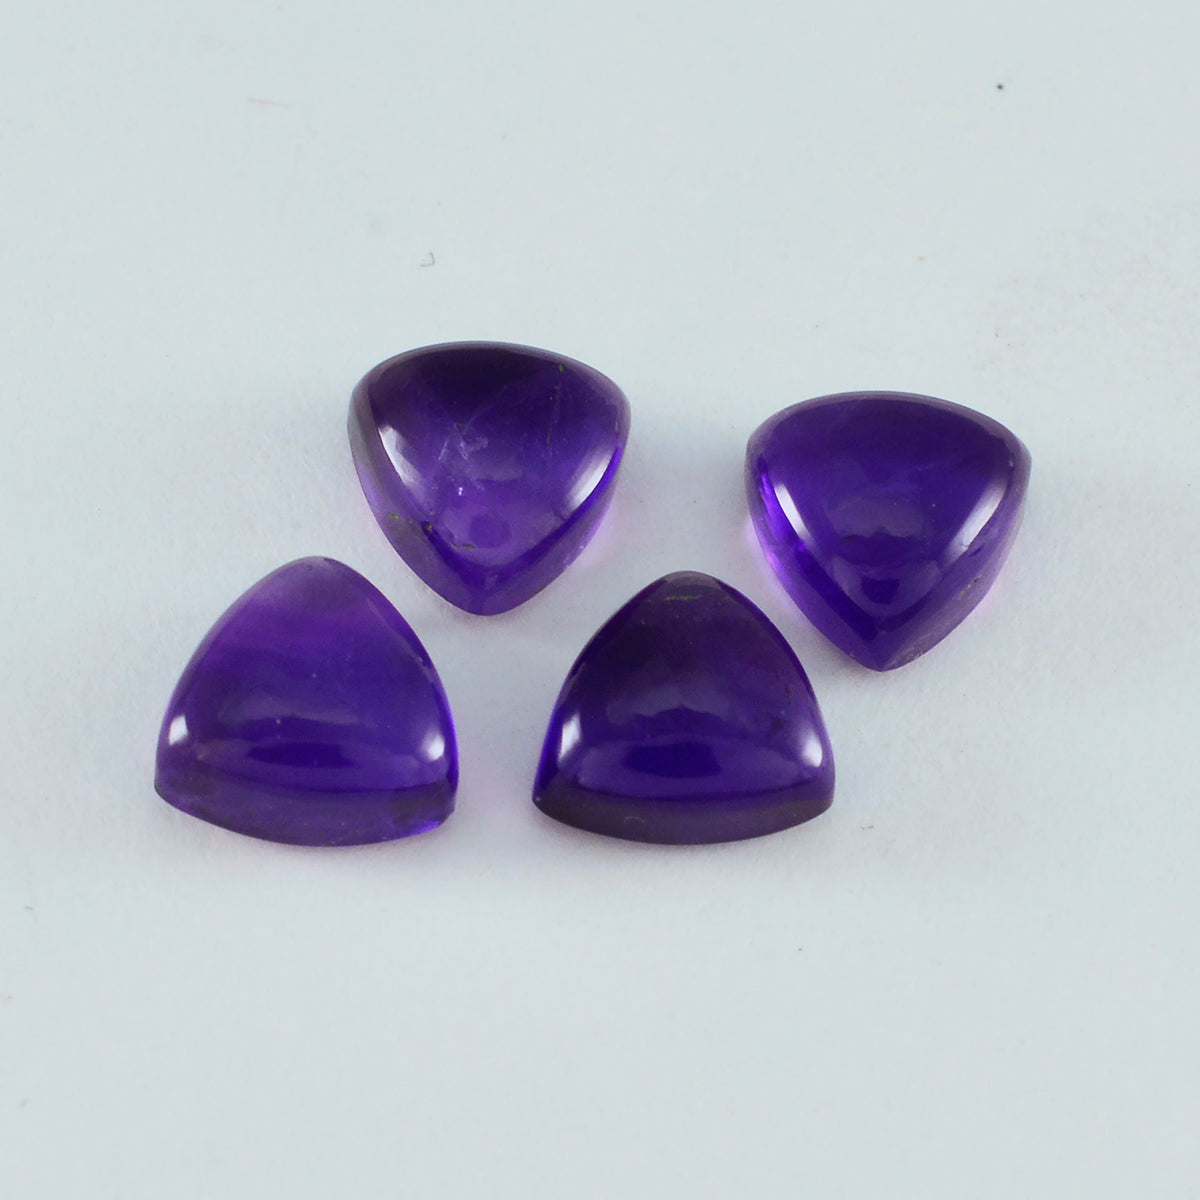 riyogems 1 шт. фиолетовый аметист кабошон 4x4 мм форма триллиона красивый качественный драгоценный камень